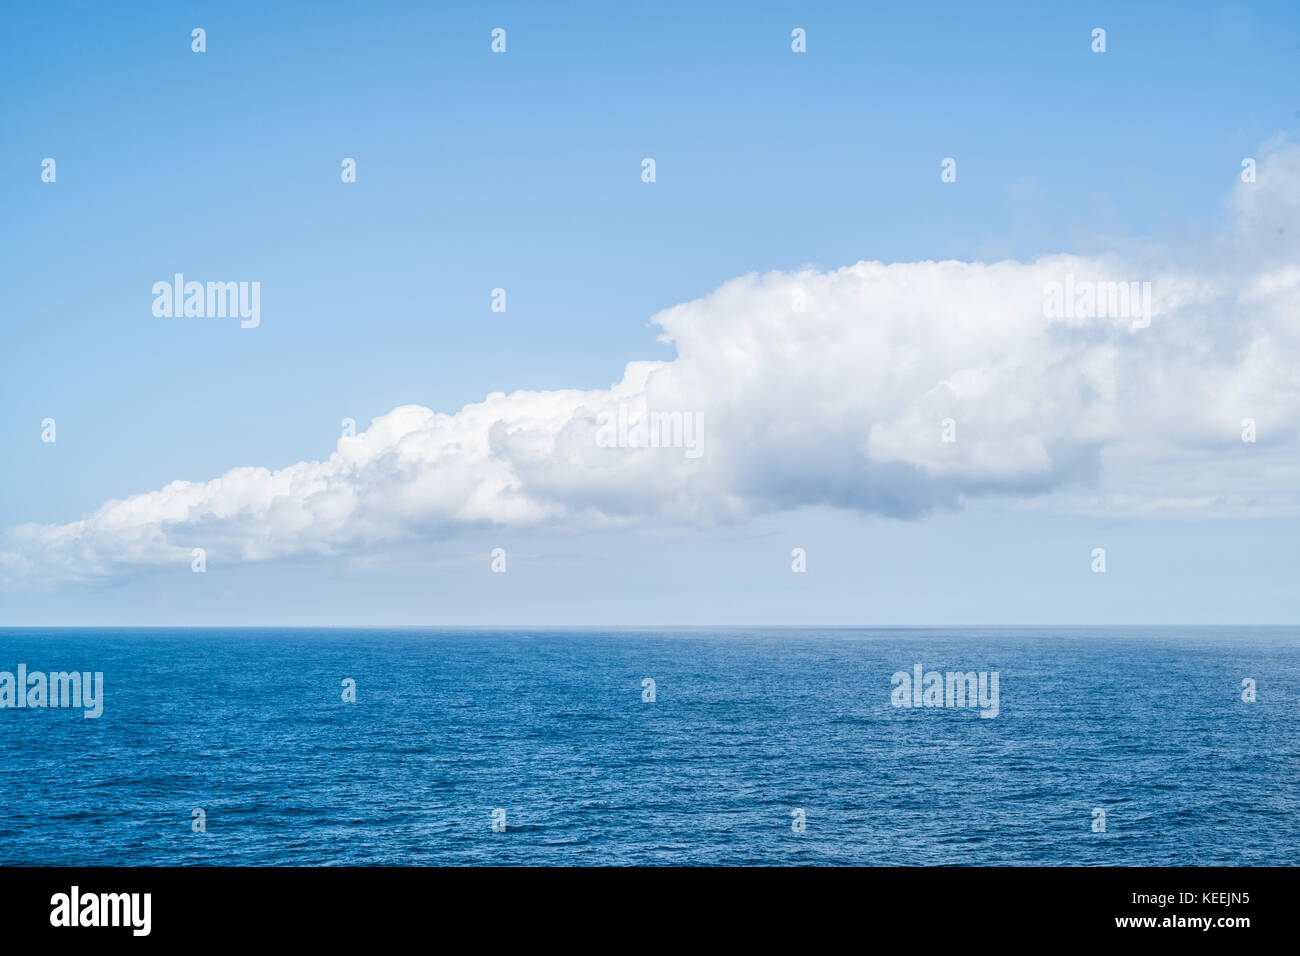 cloud bank at sea Stock Photo